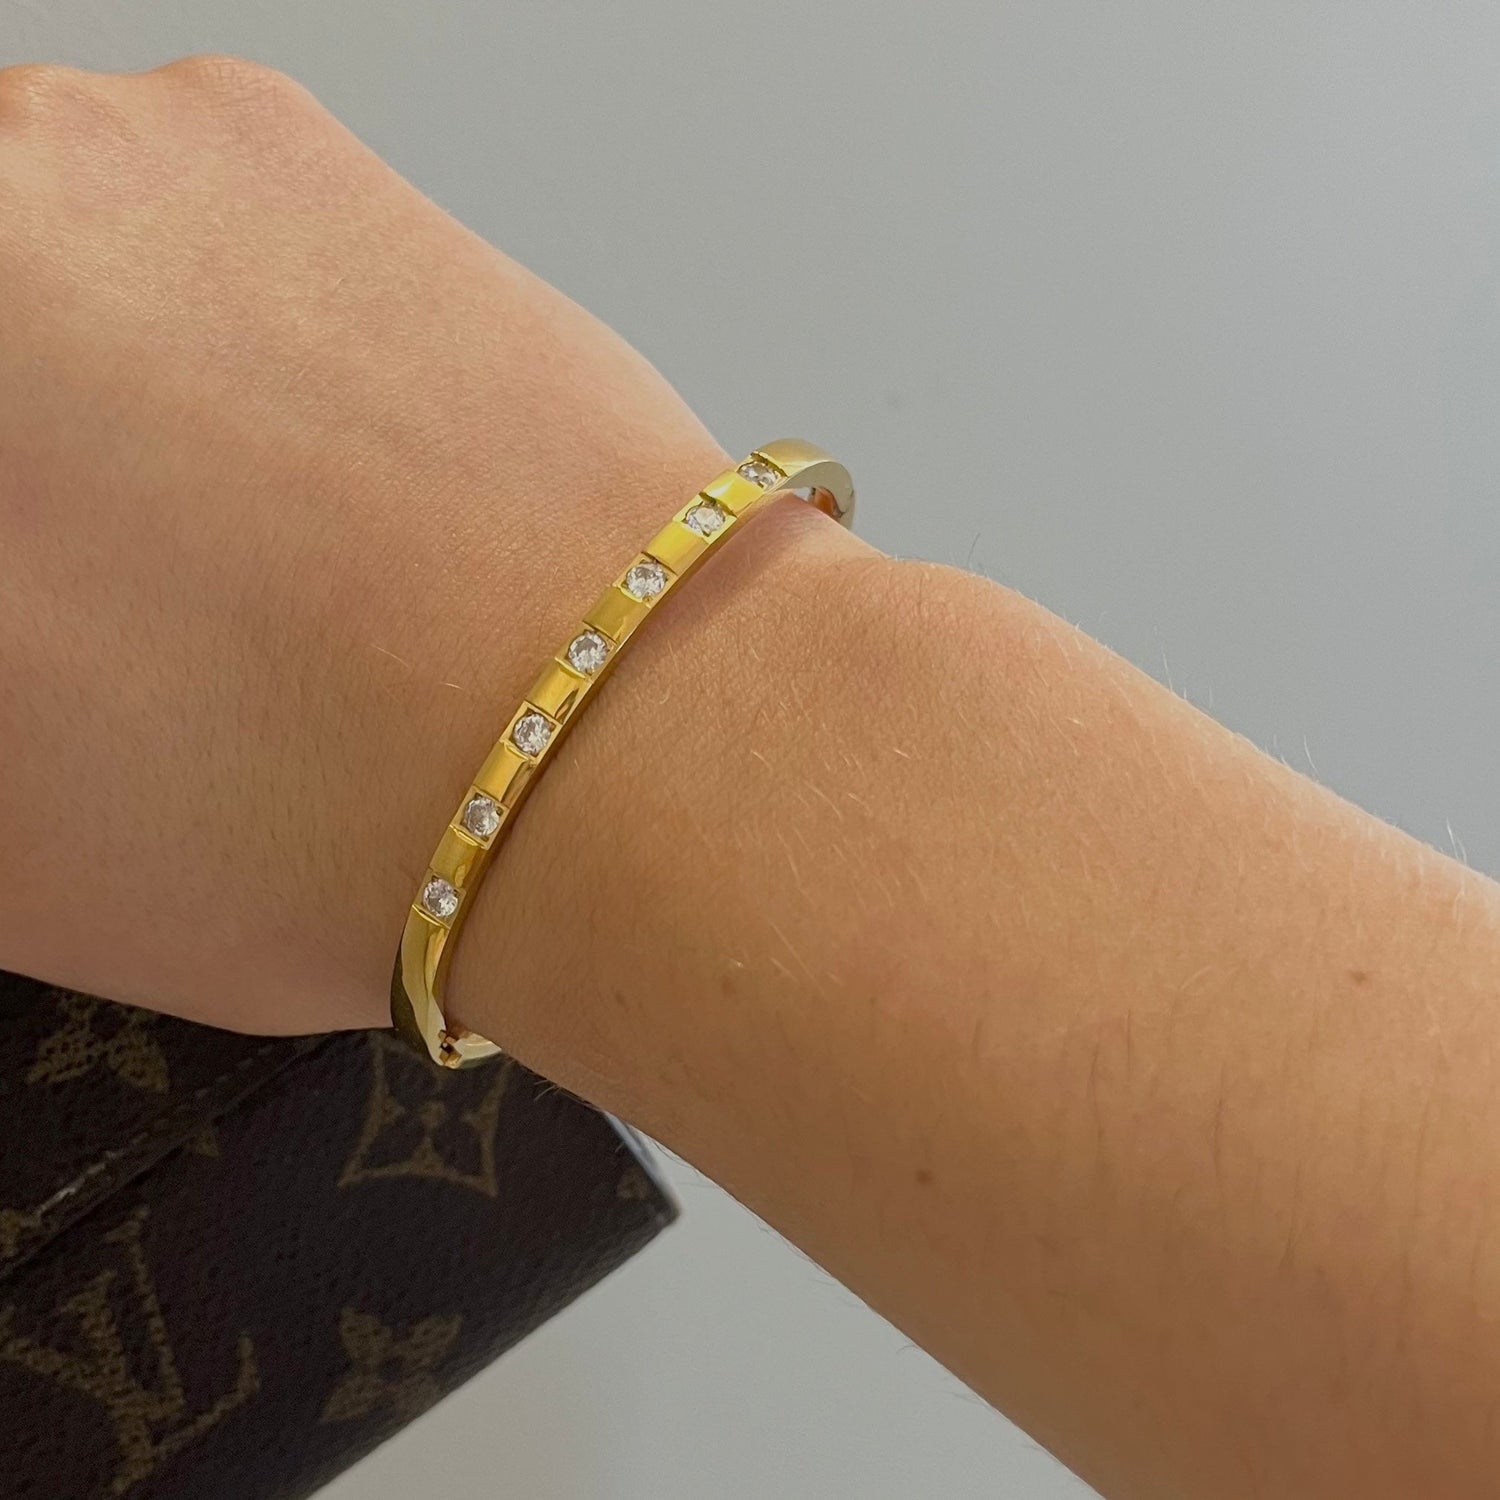 Stone Cuff Bracelet - Namaste Jewelry Canada